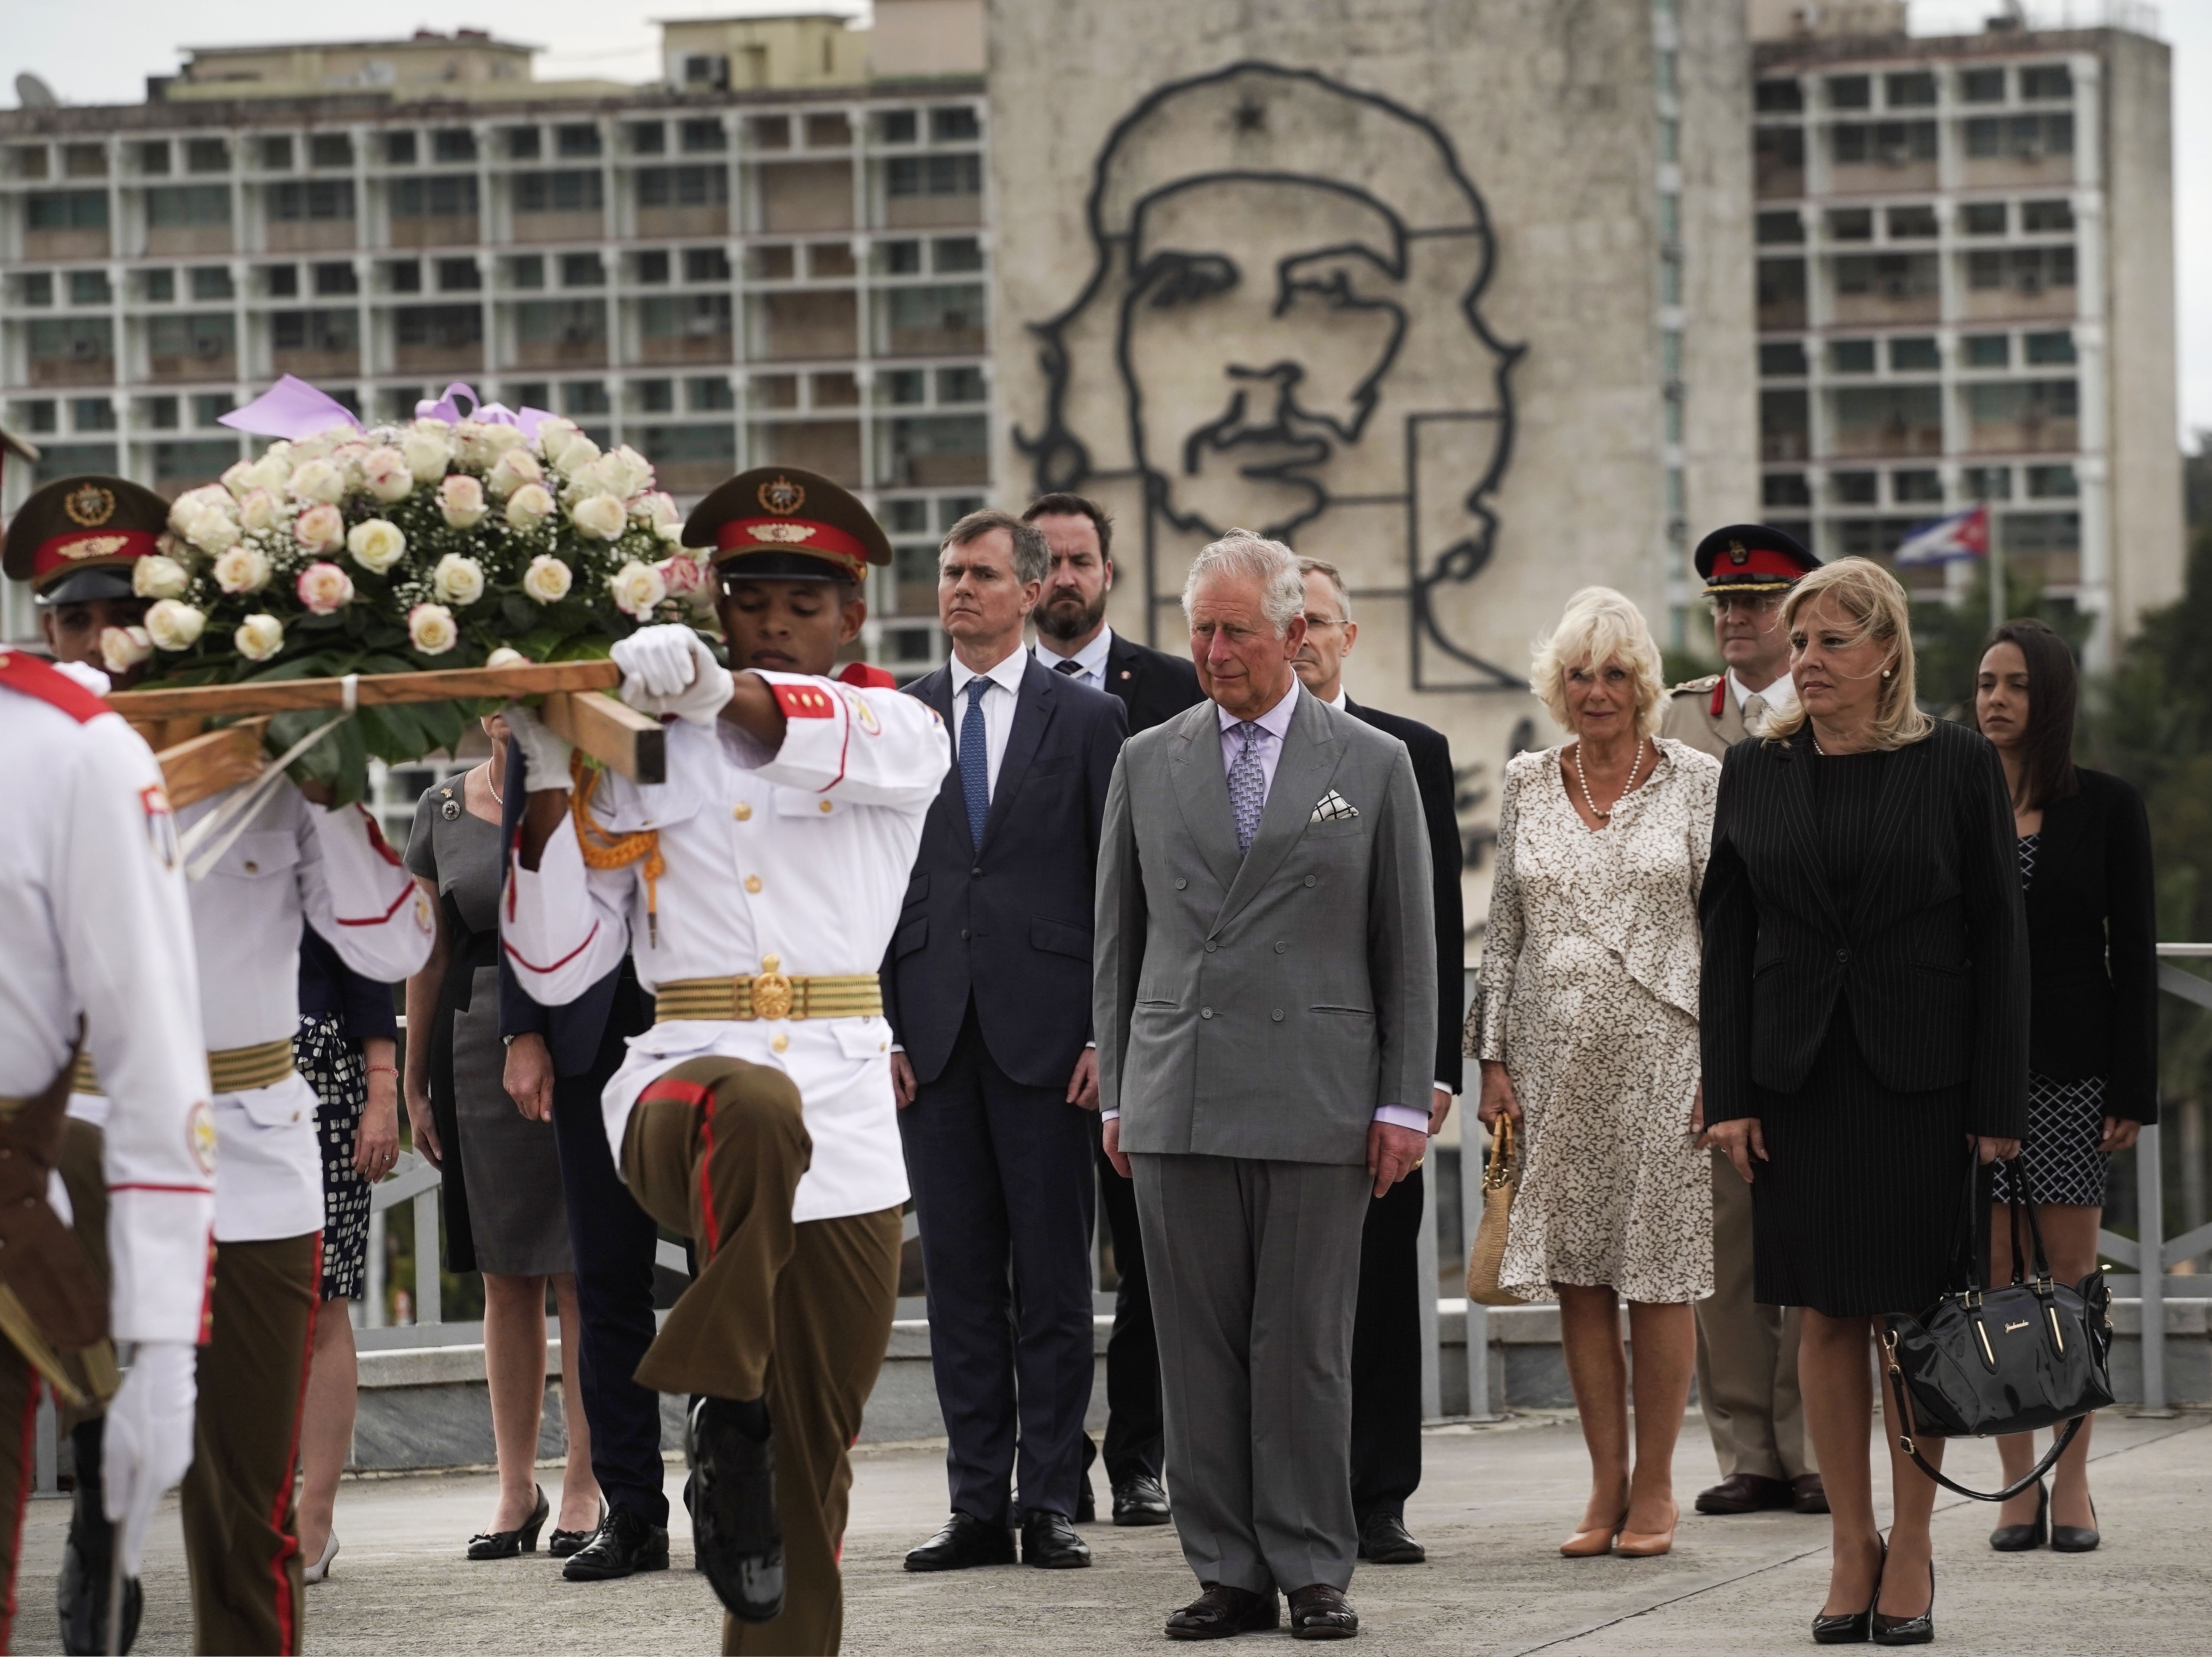 Carlos, príncipe de Gales, al centro, y su esposa, Camila, duquesa de Cornwall, al centro a la derecha, asisten a una ceremonia para colocar una ofrenda en el monumento a José Martí, en La Habana, Cuba, el domingo 24 de marzo de 2019. (AP Foto/Ramón Espinosa)